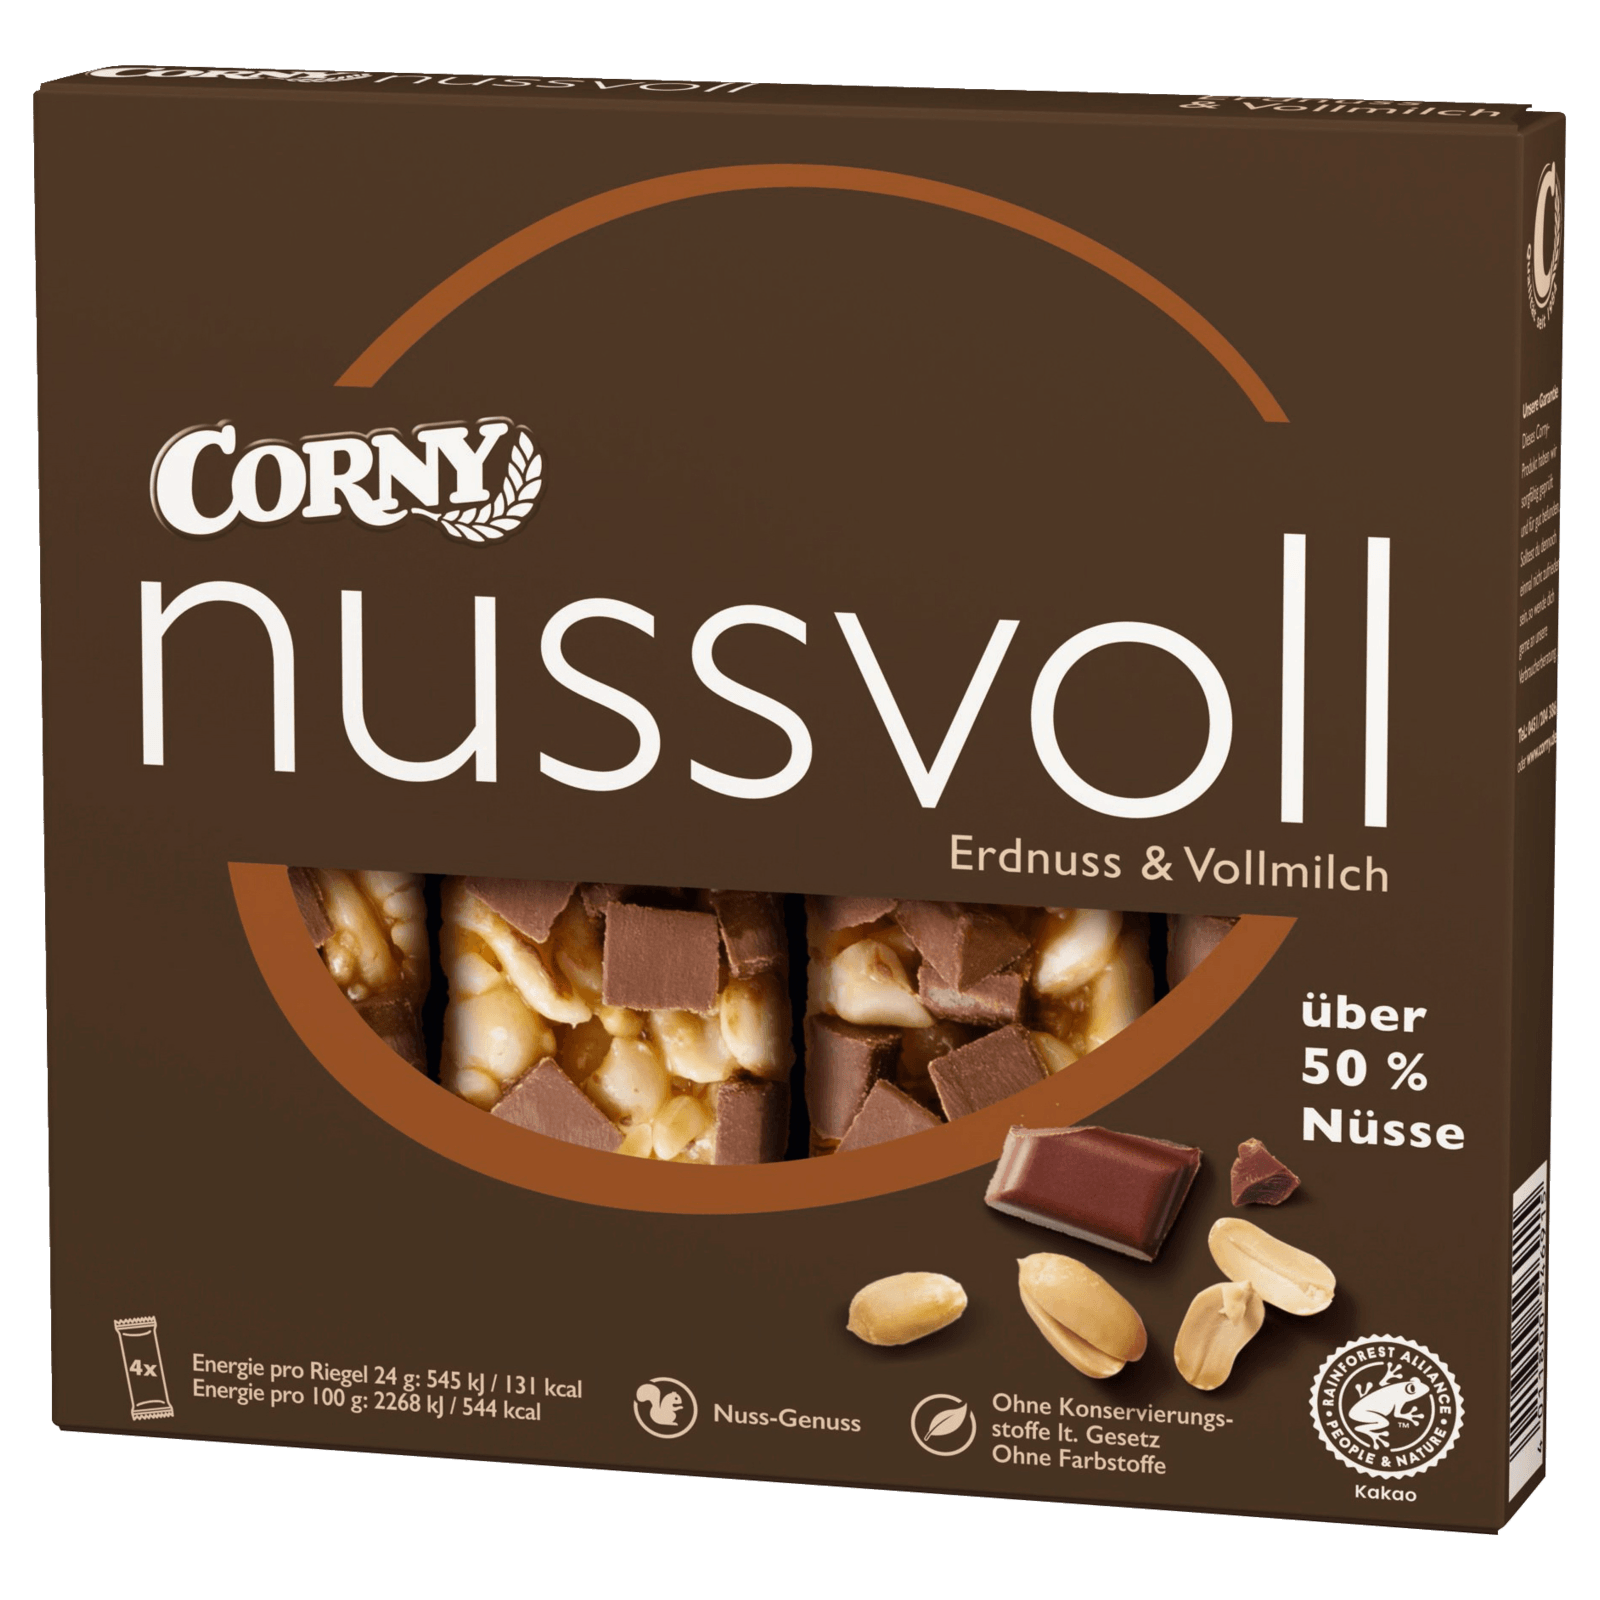 Corny Nussvoll Erdnuss & Vollmilch 96g, 4 Stück  für 1.89 EUR